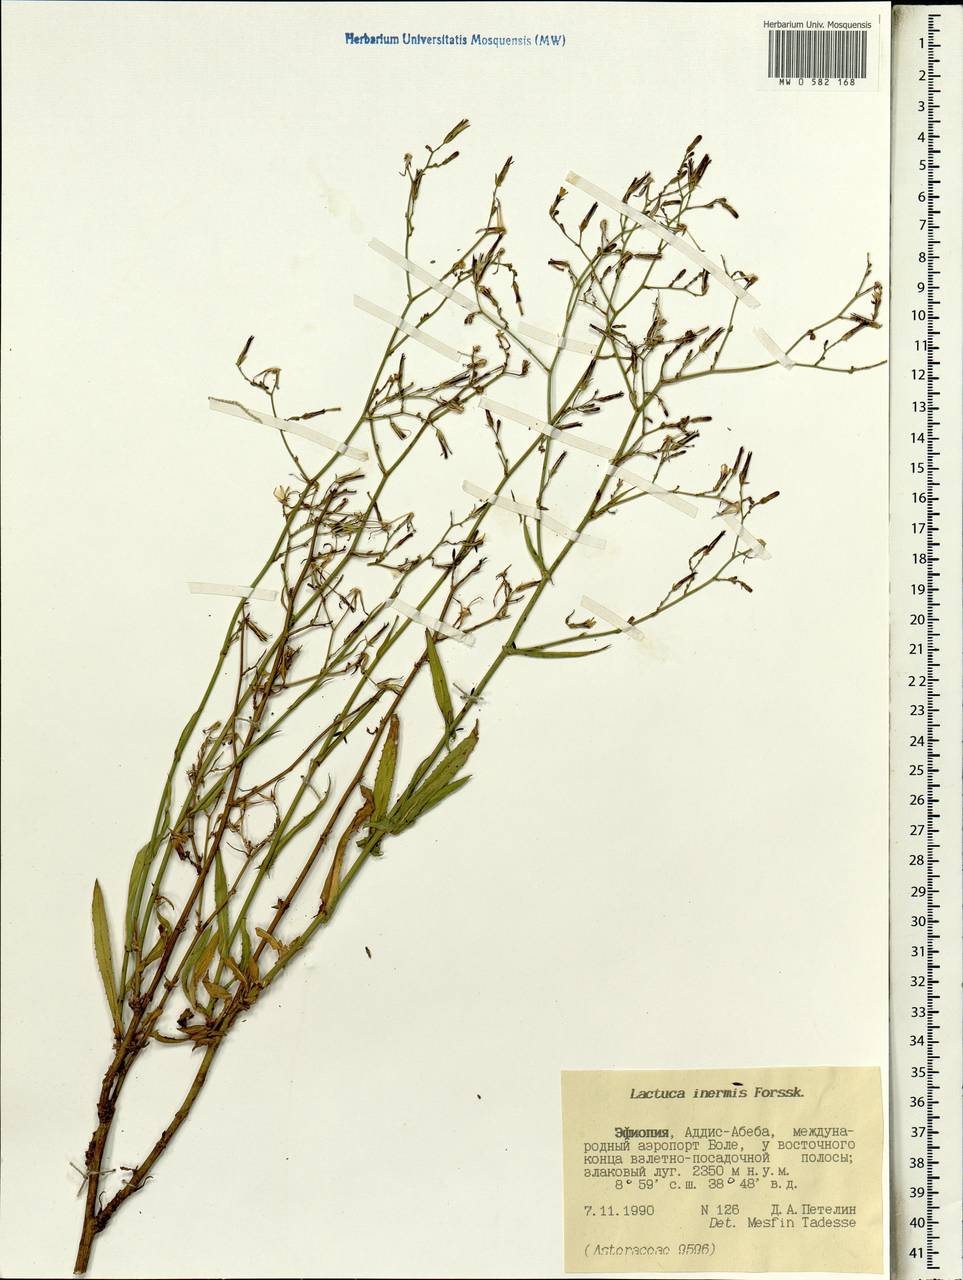 Lactuca inermis Forssk., Africa (AFR) (Ethiopia)